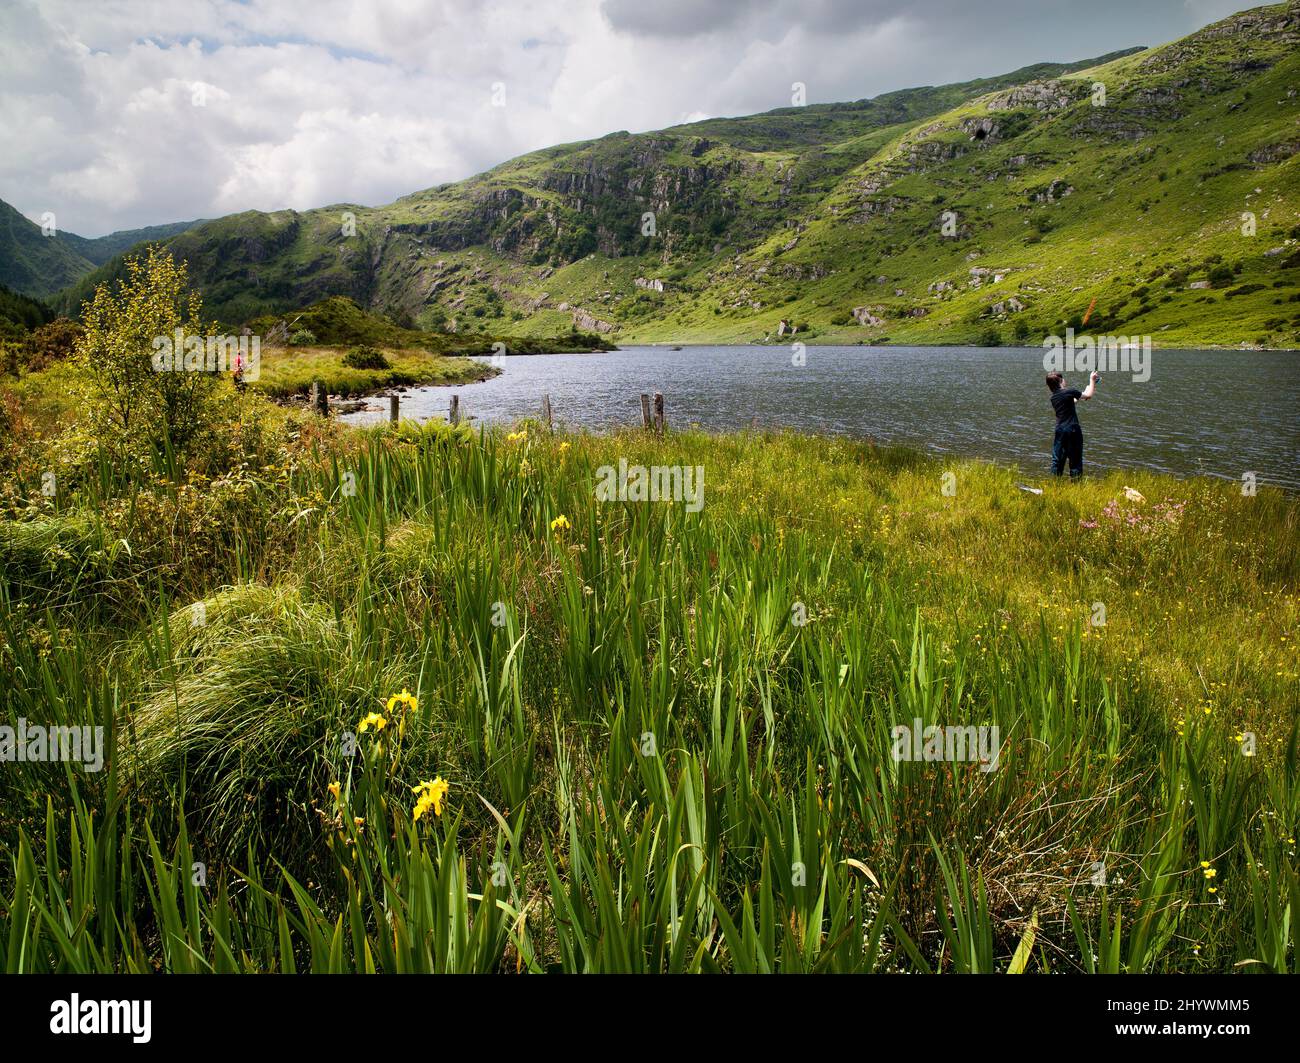 Persone che pescano a Gouganbarra, Contea di Cork, Irlanda Foto Stock